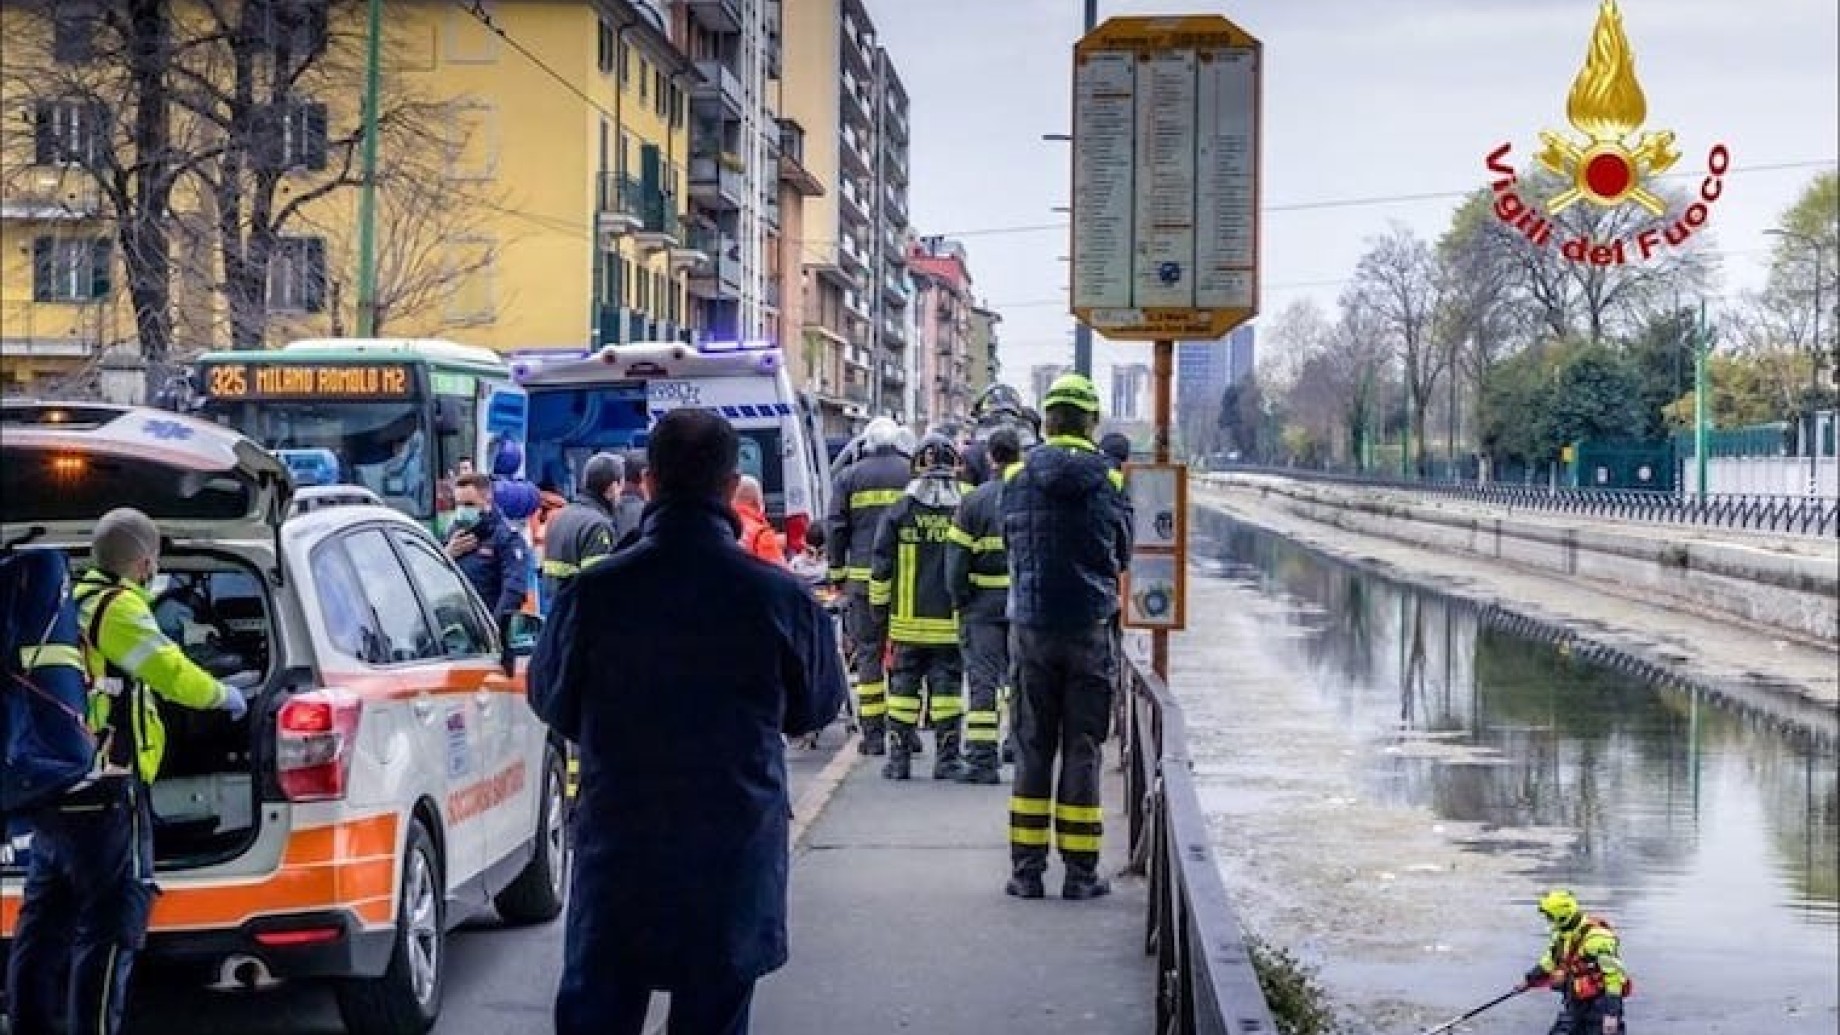 Milano, si tuffa nel Naviglio in secca per scappare dalla polizia e si fracassa una gamba